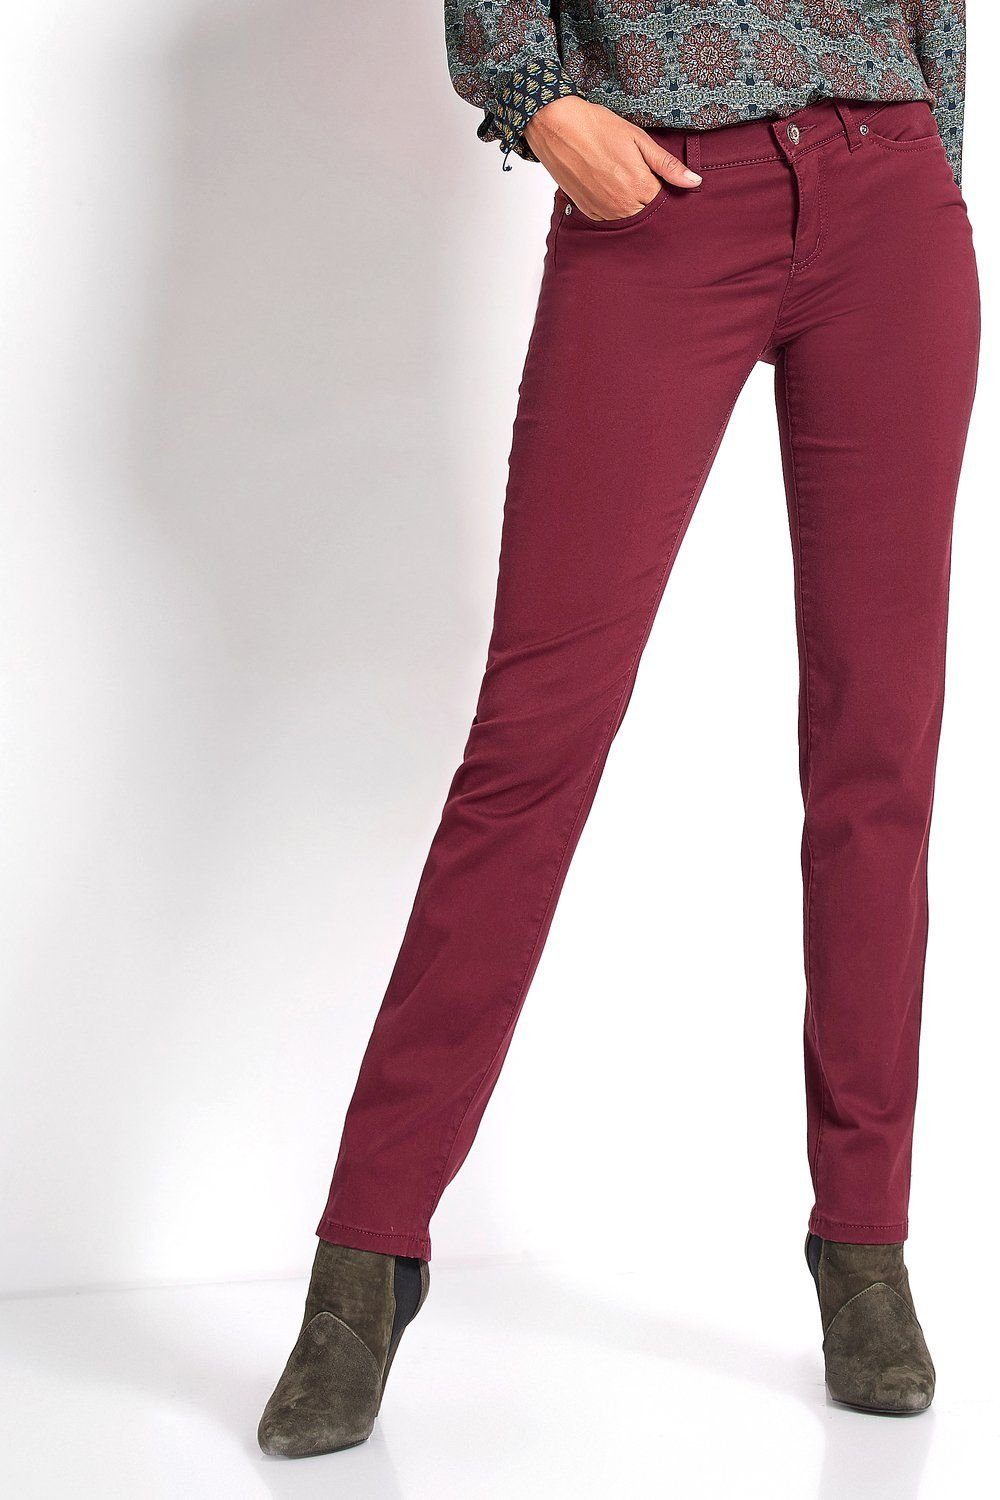 TONI 5-Pocket-Jeans merlot